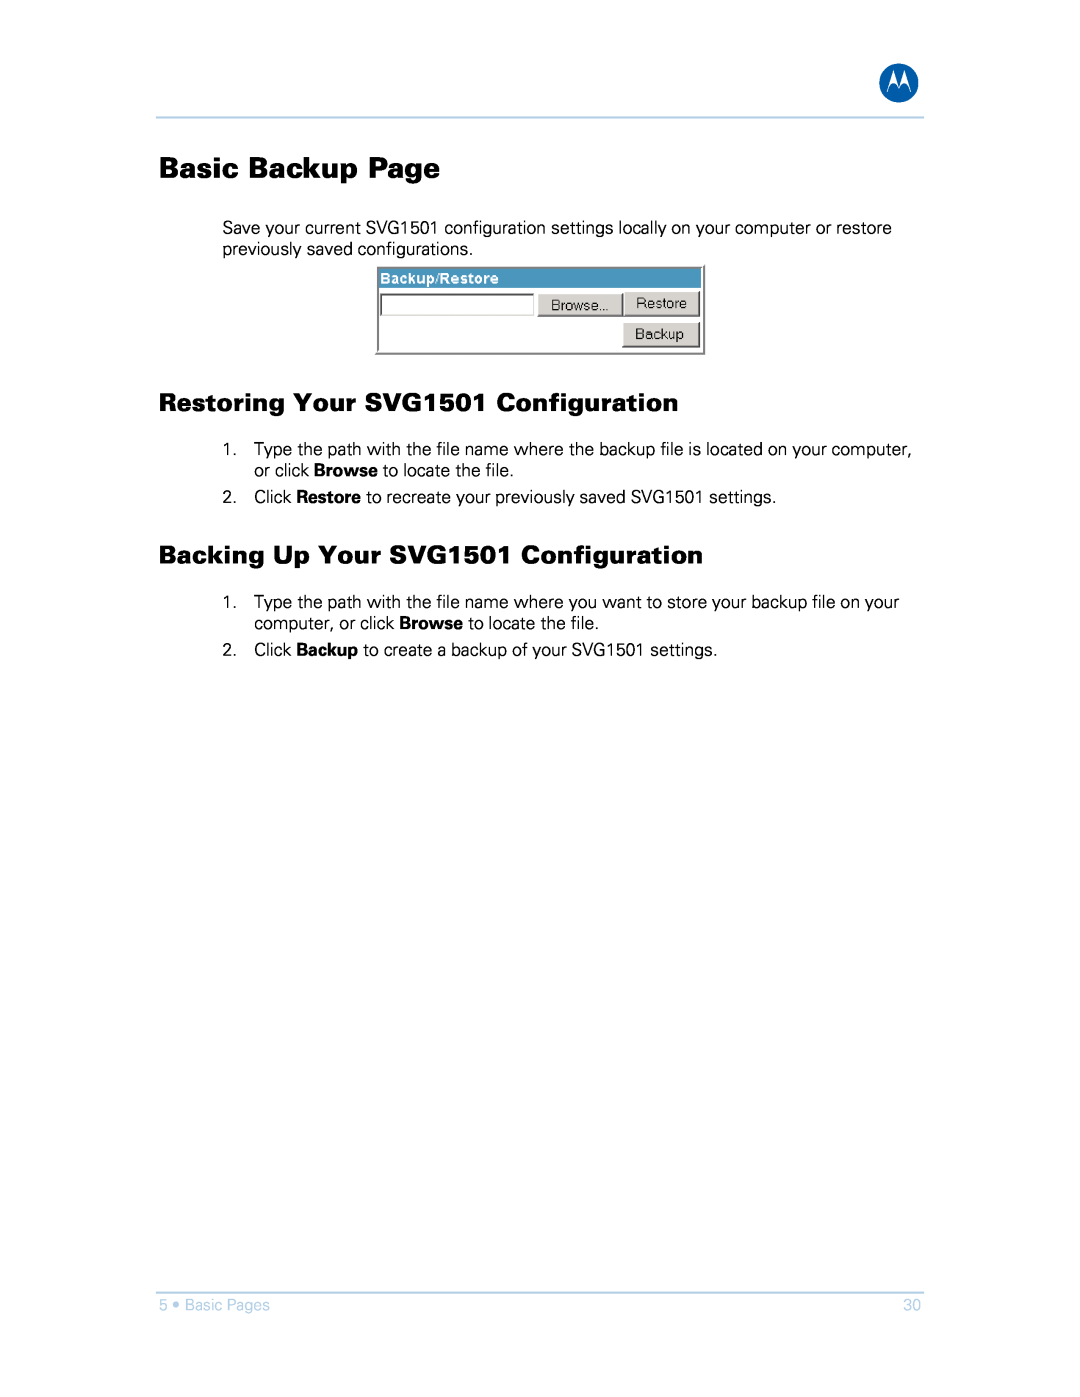 Motorola SVG1501UE manual Basic Backup Page, Restoring Your SVG1501 Configuration, Backing Up Your SVG1501 Configuration 